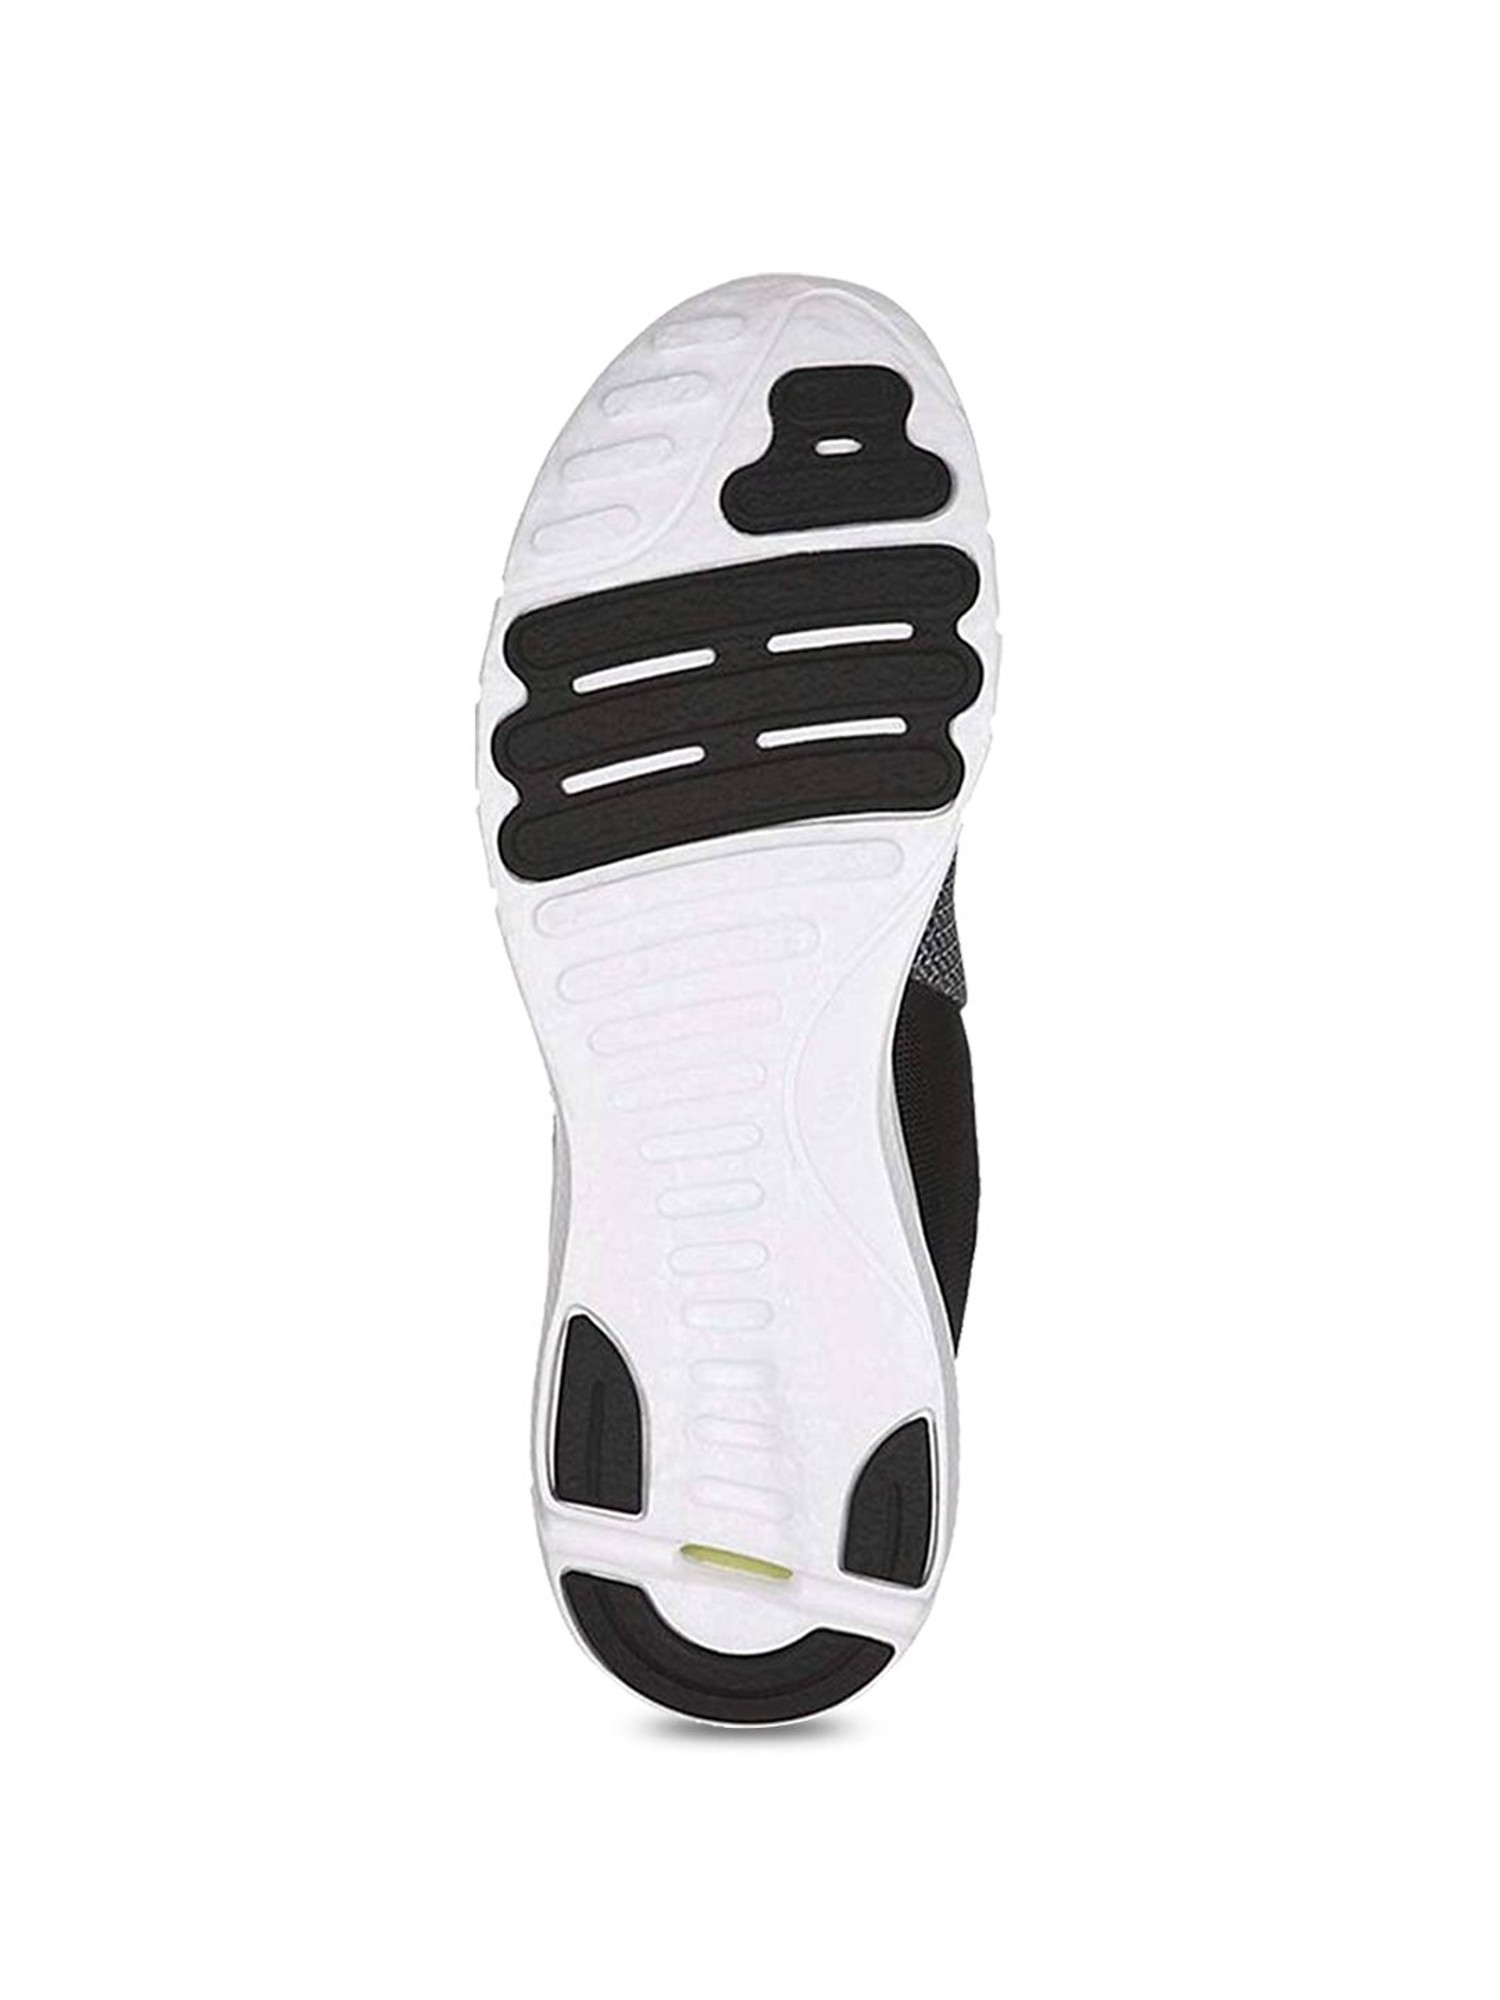 Buy Asics Nitrofuze 2 Black Shoes for Men at Best Price Tata CLiQ